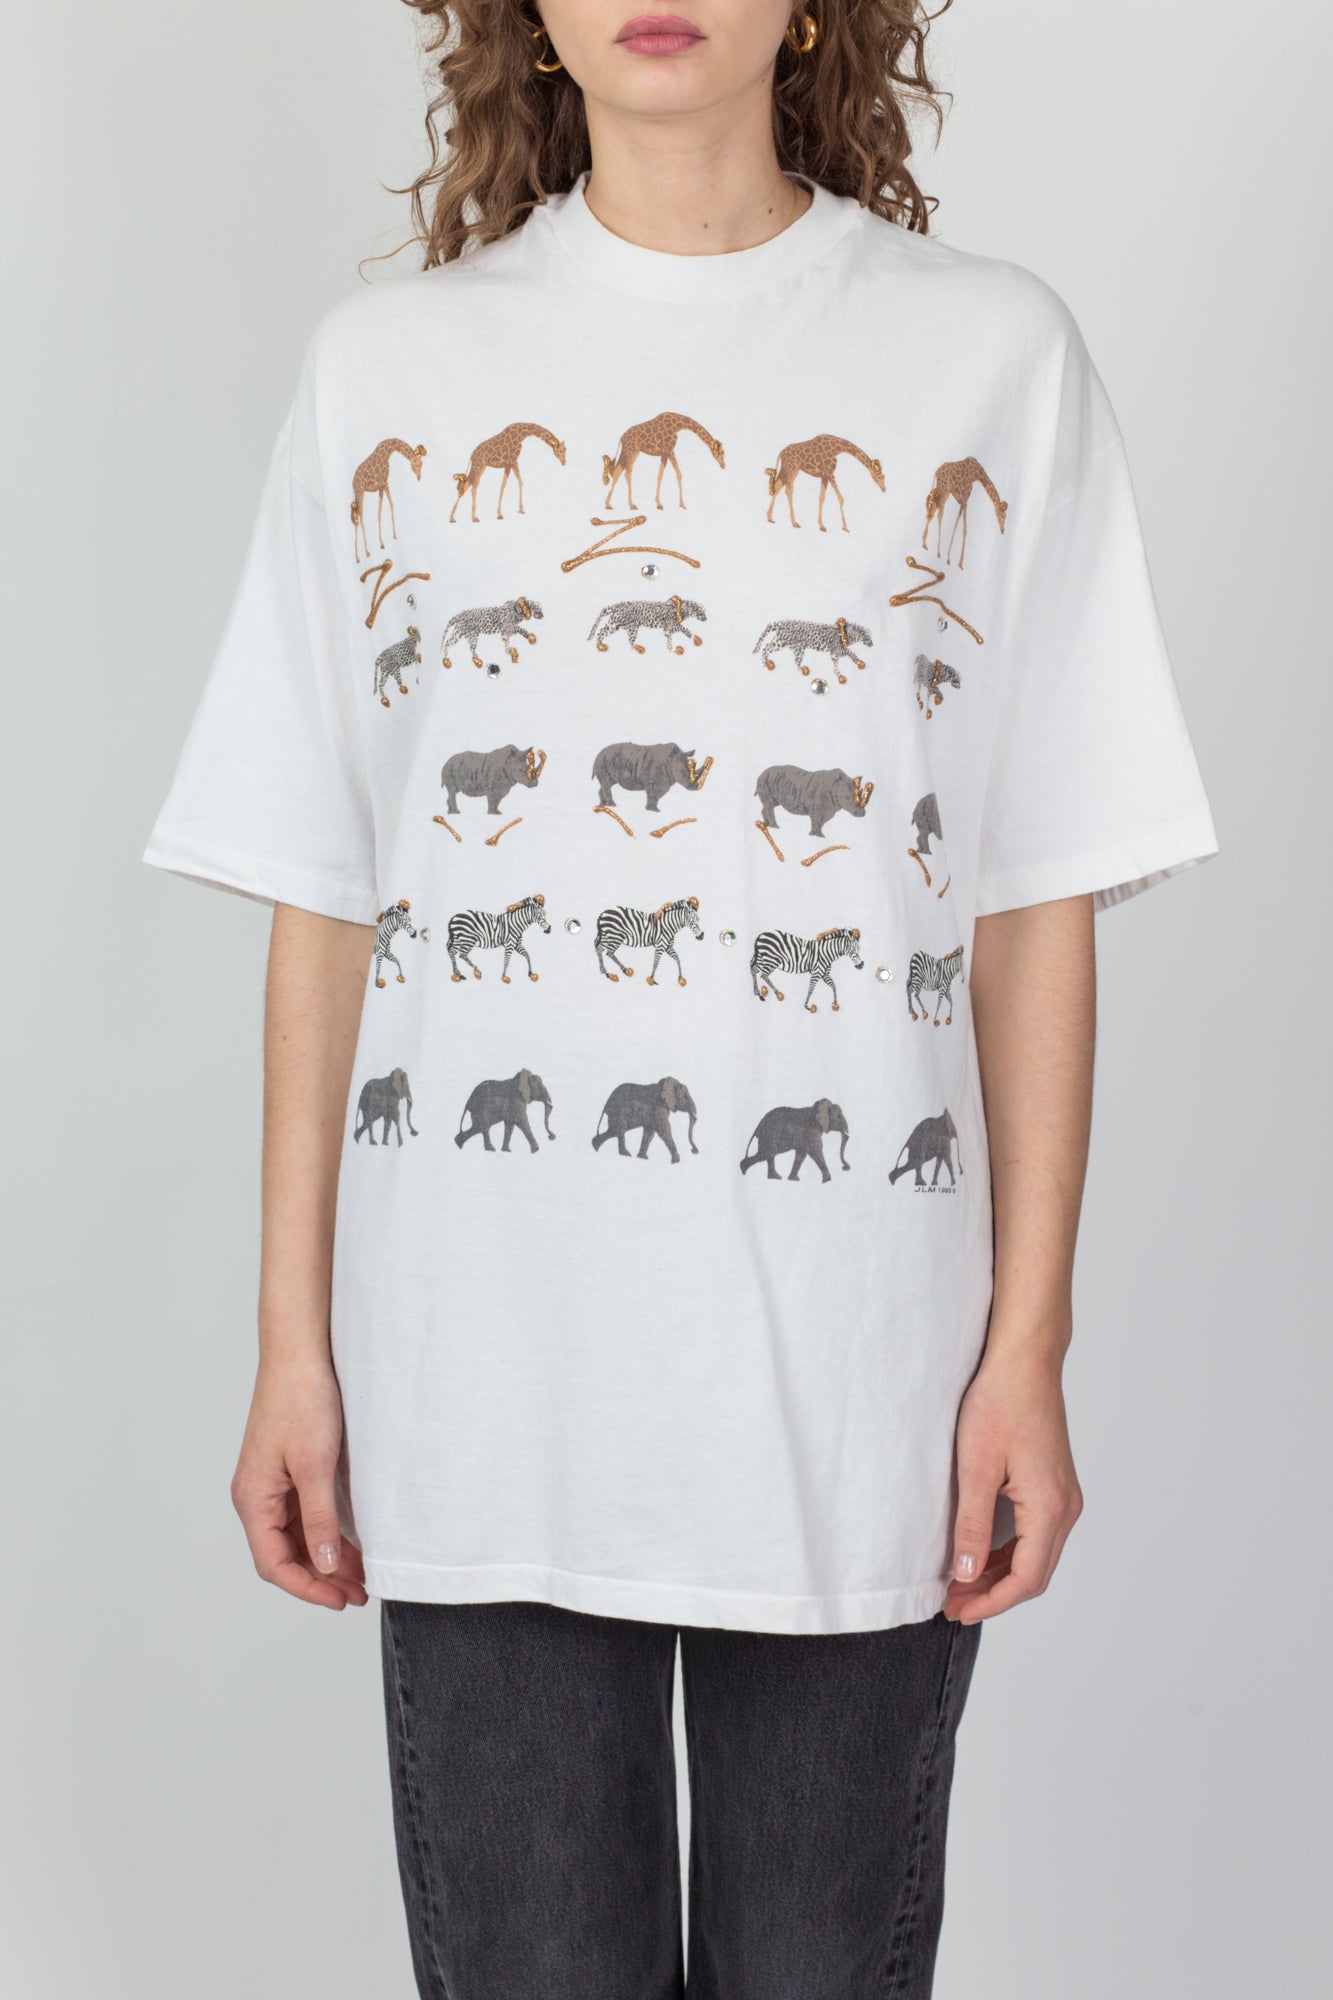 90s African Animal Puff Paint T Shirt - Men's XL, Women's XXL